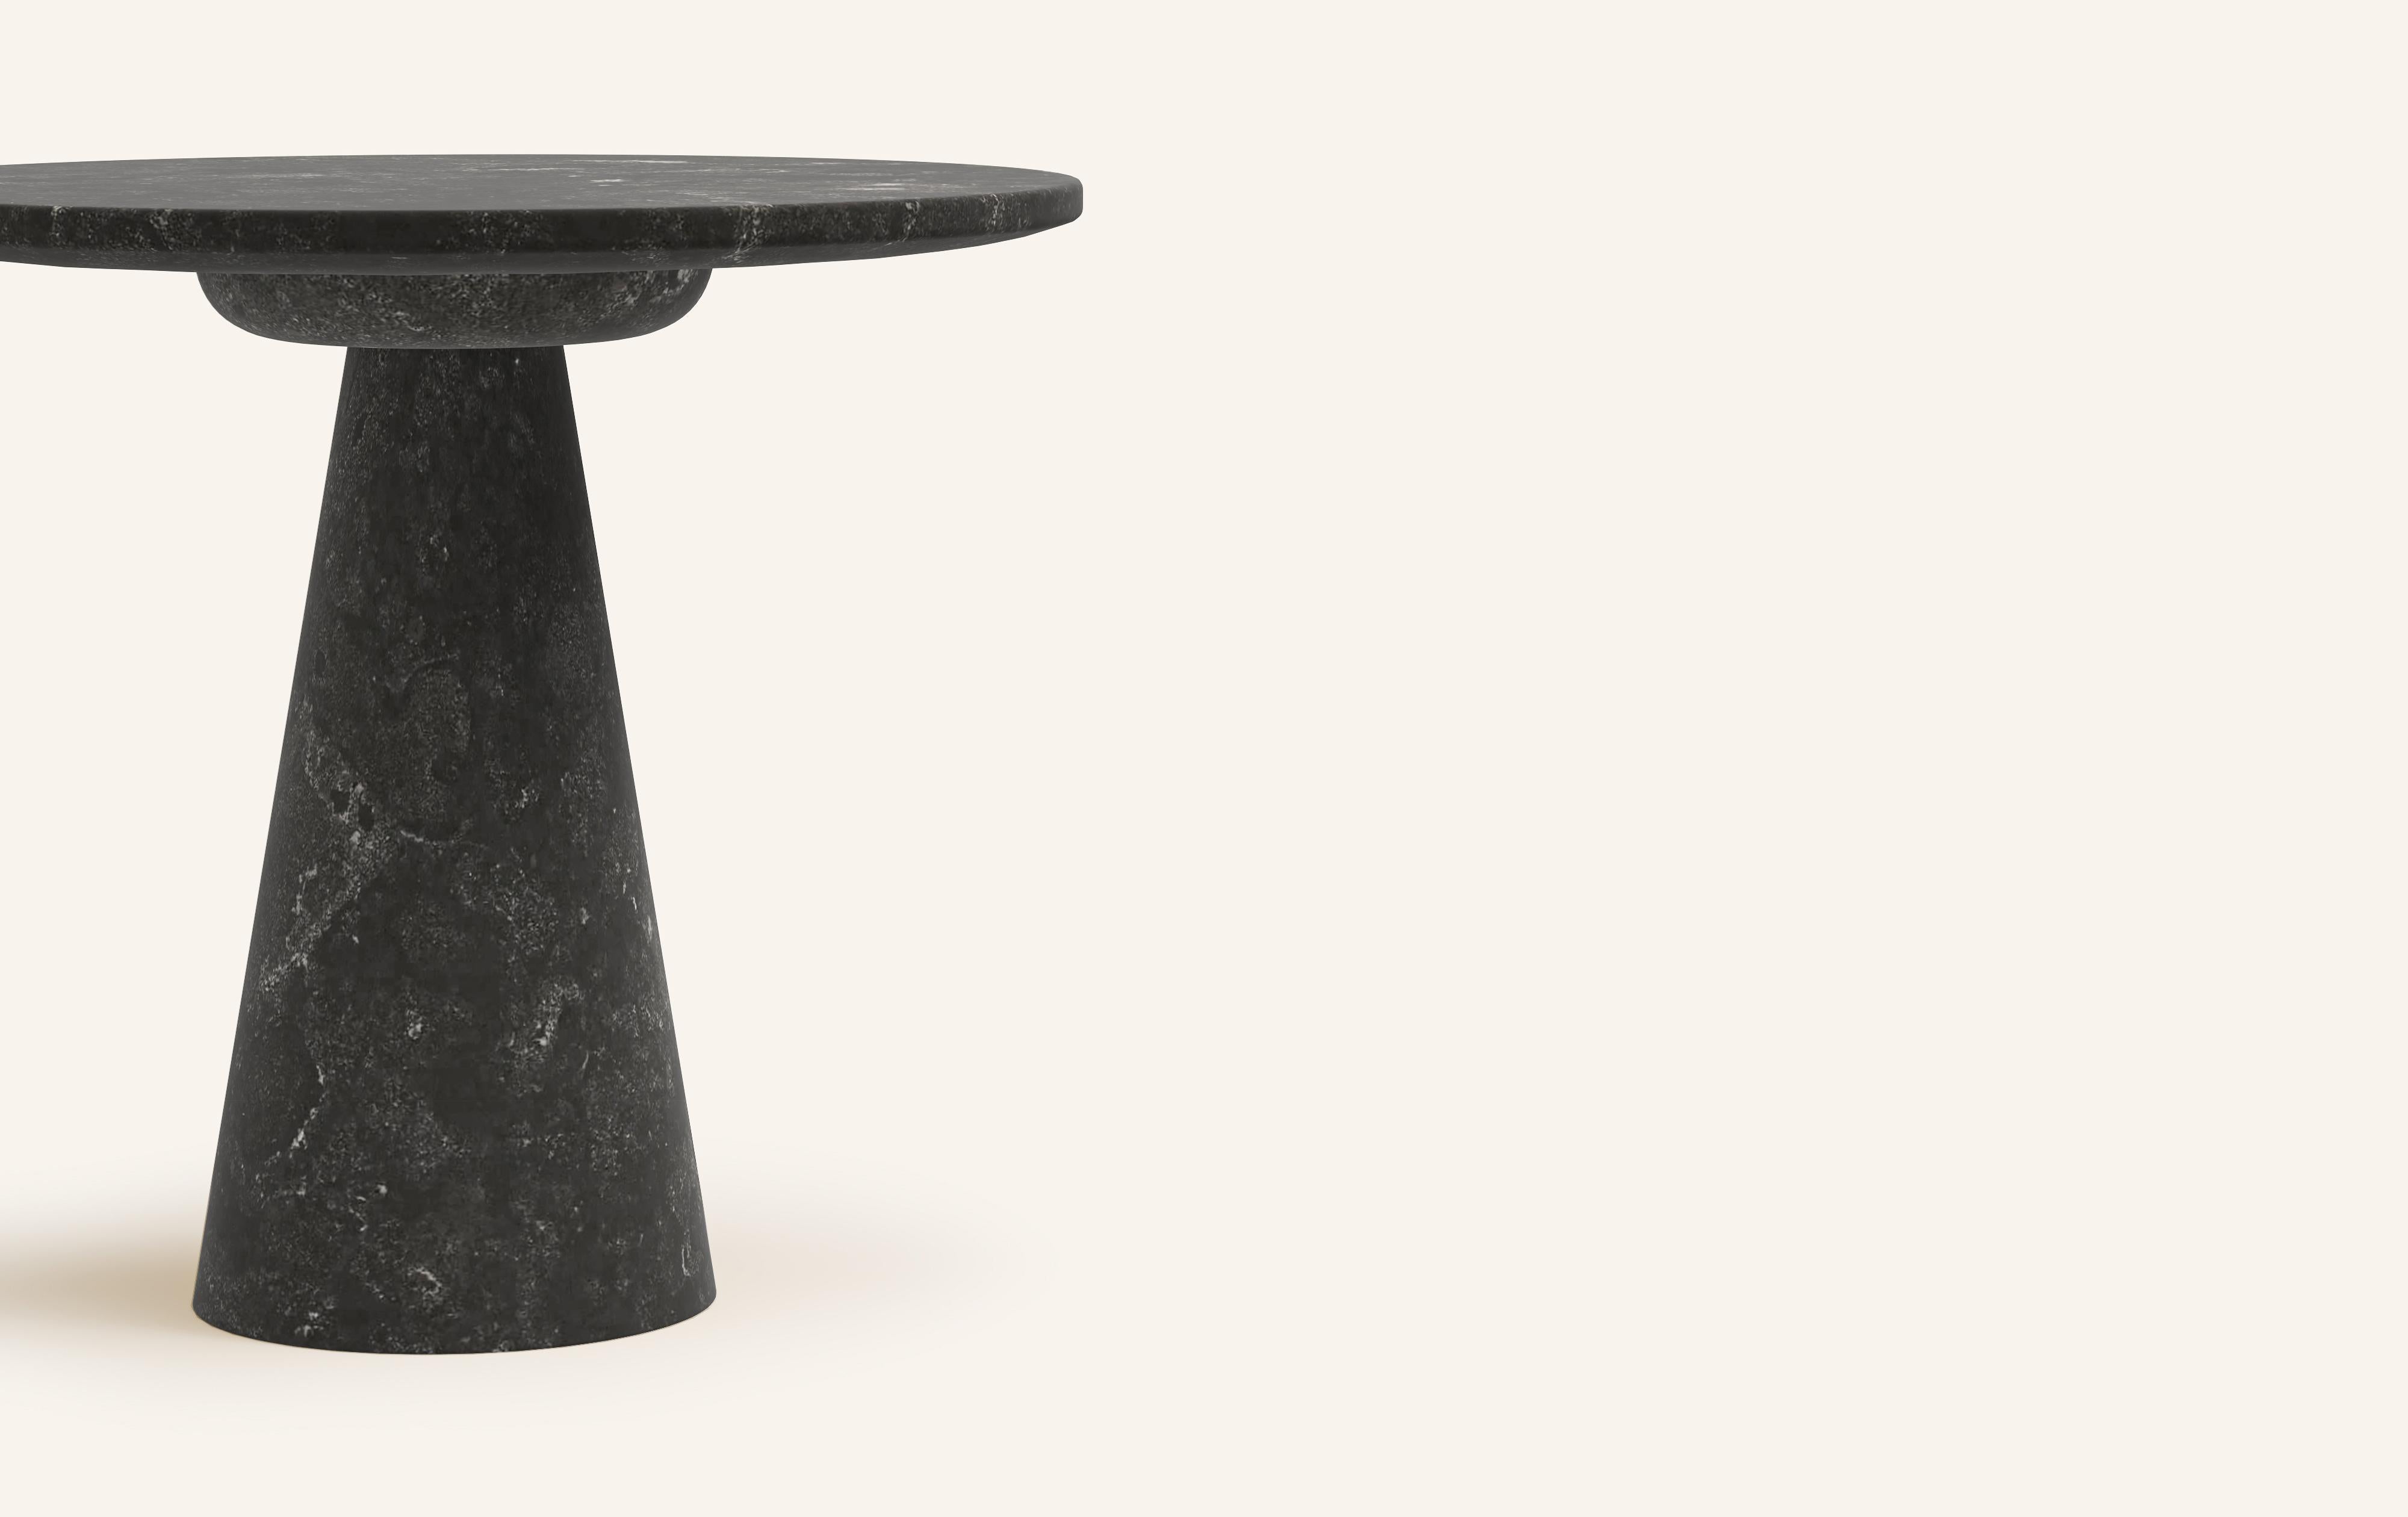 Organic Modern FORM(LA) Cono Round Side Table 24”L x 24”W x 21”H Nero Petite Granite For Sale